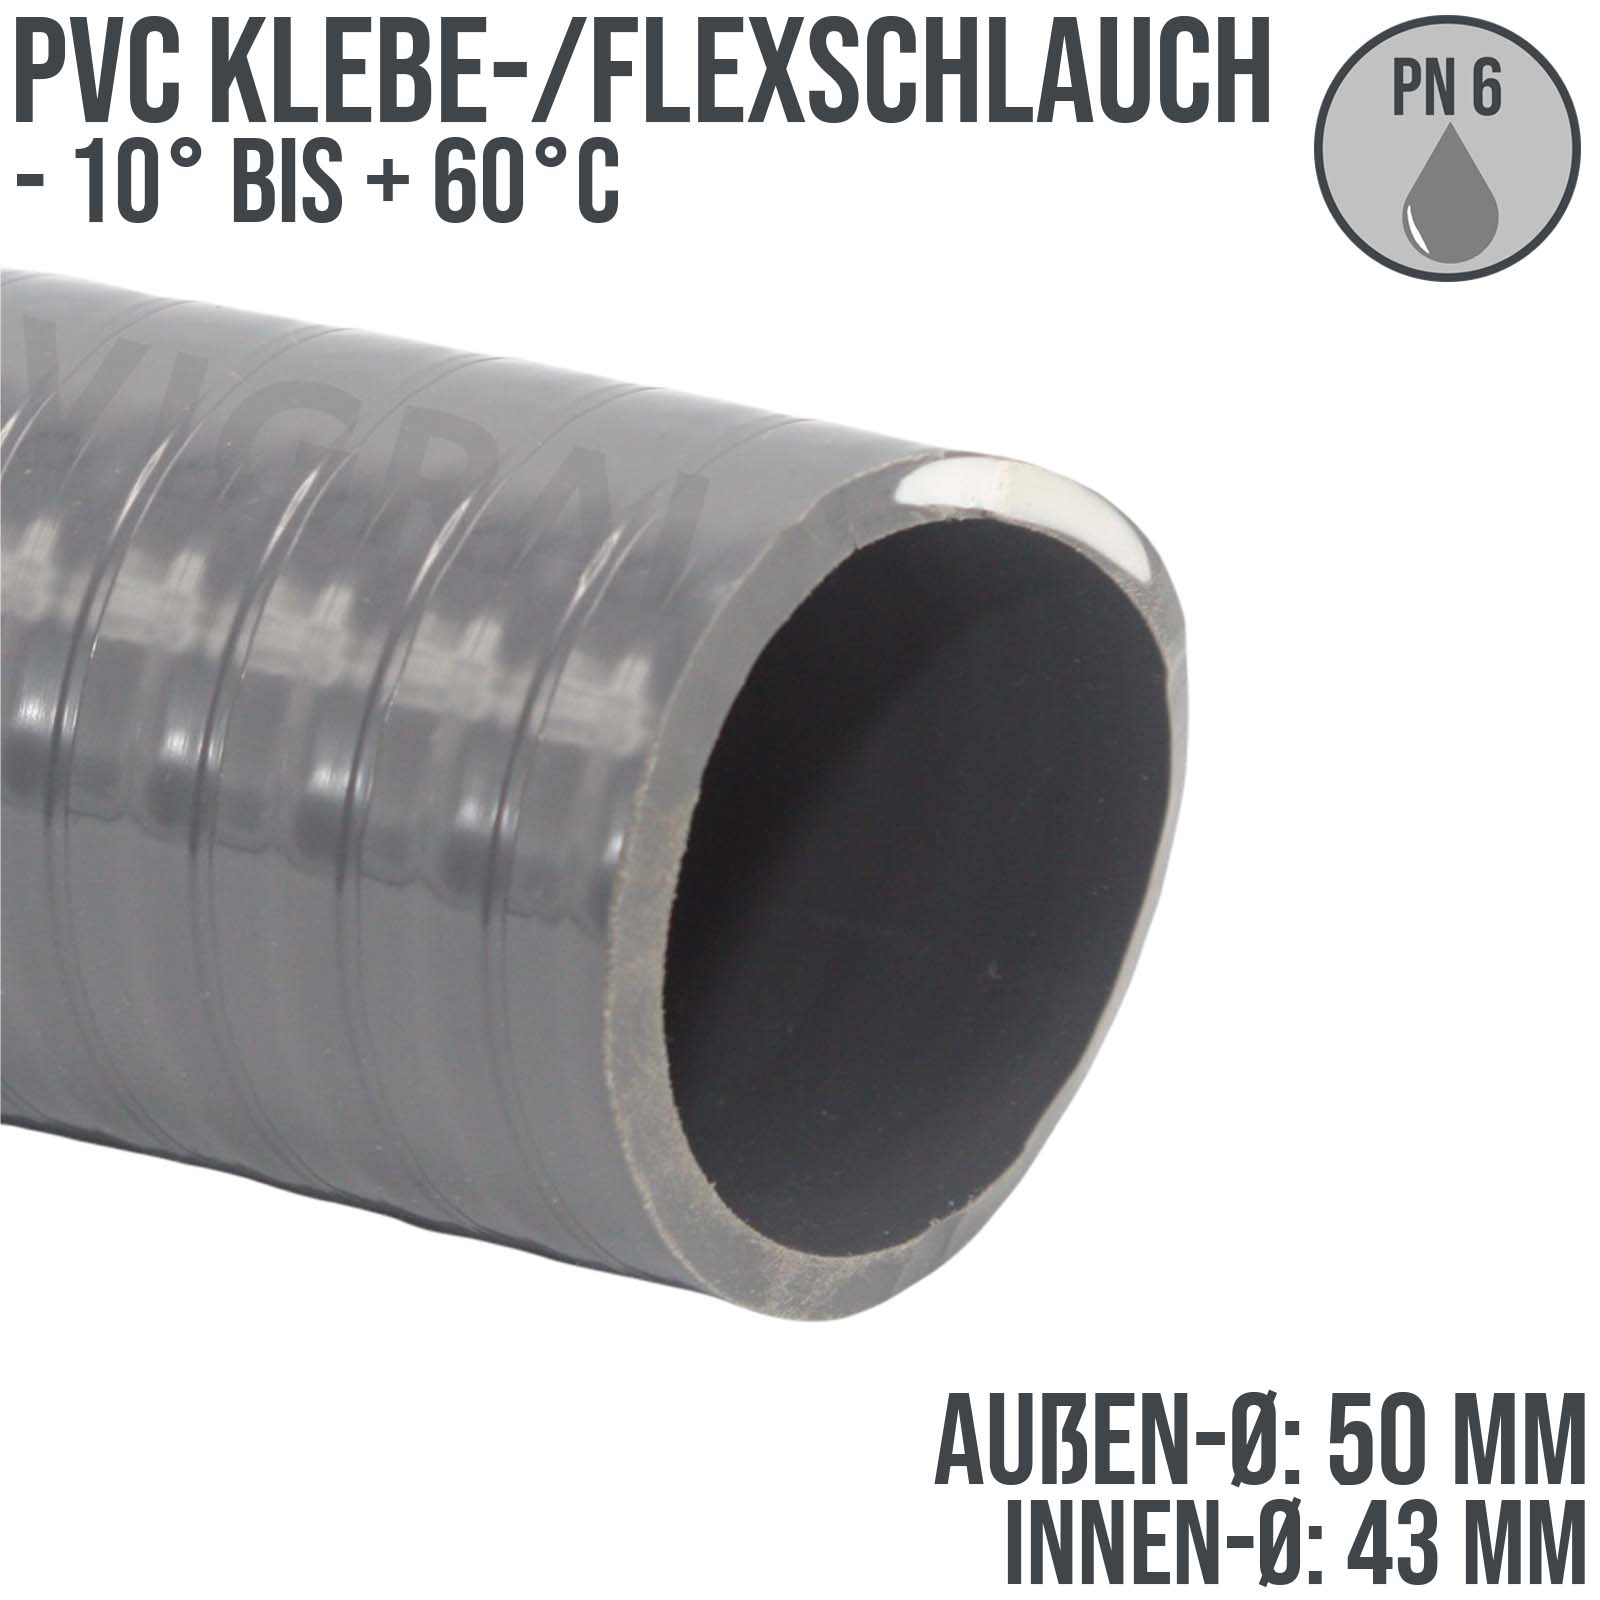 PVC Klebe-/Flexschlauch in grau für den Pool-, Teich und Schwimmbadbau -  Außendurchmesser (AD) 50 mm, Innendruchmesser (ID) 43 mm